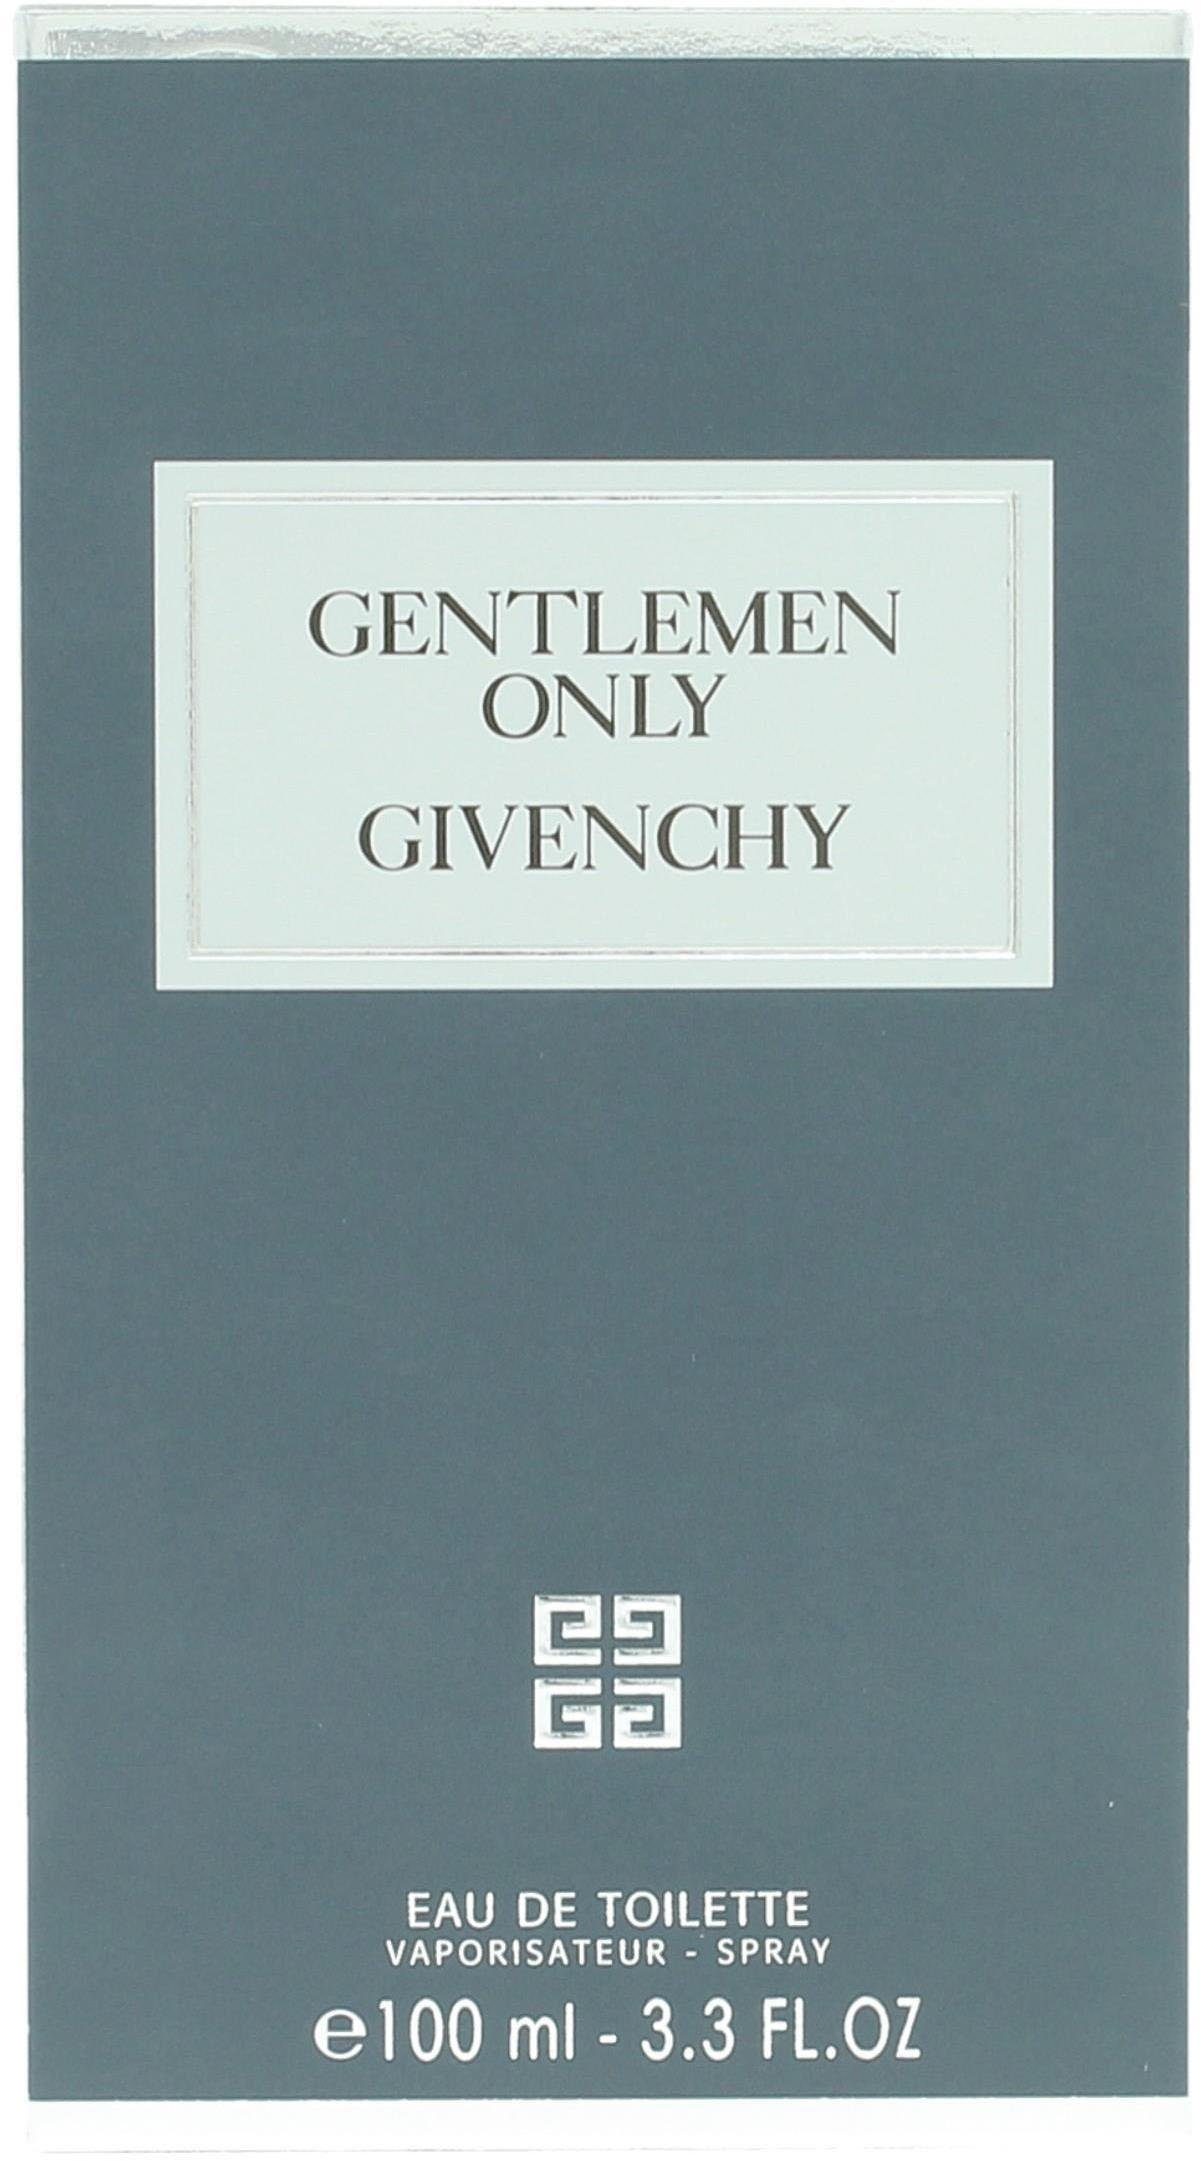 BURBERRY GIVENCHY Eau Toilette Only Gentlemen de